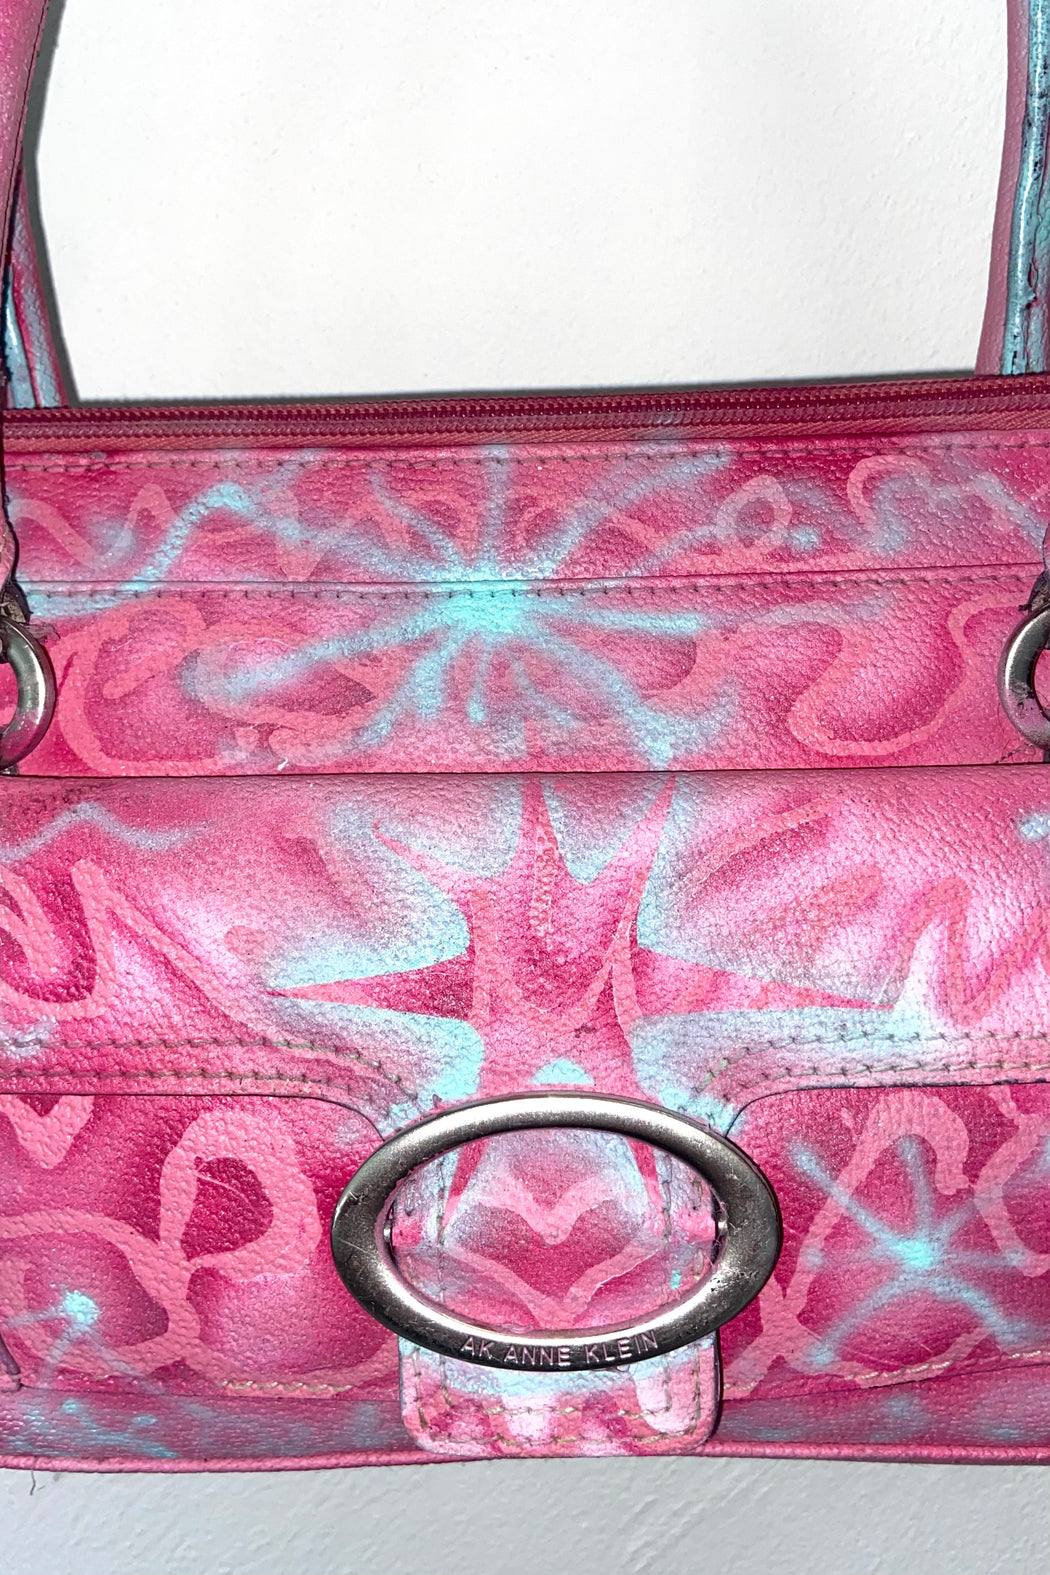 Anne’s Klein Pink Handbag